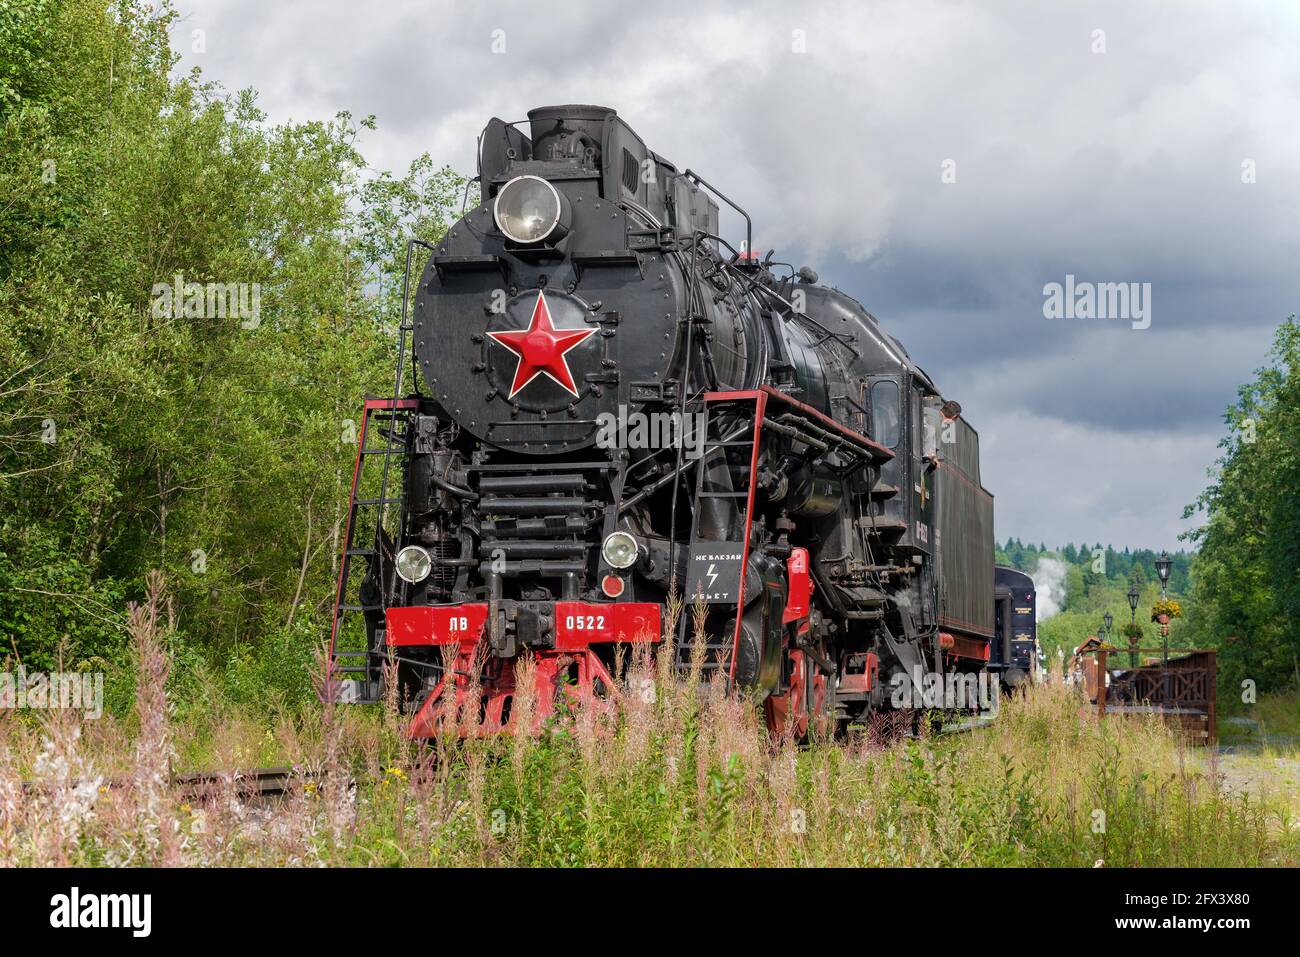 RUSKEALA, RUSSIE - 15 AOÛT 2020 : fixation de l'ancienne locomotive à vapeur LV-0522 au train rétro touristique 'Ruskeala Express' sur la montagne Ruskeala Banque D'Images